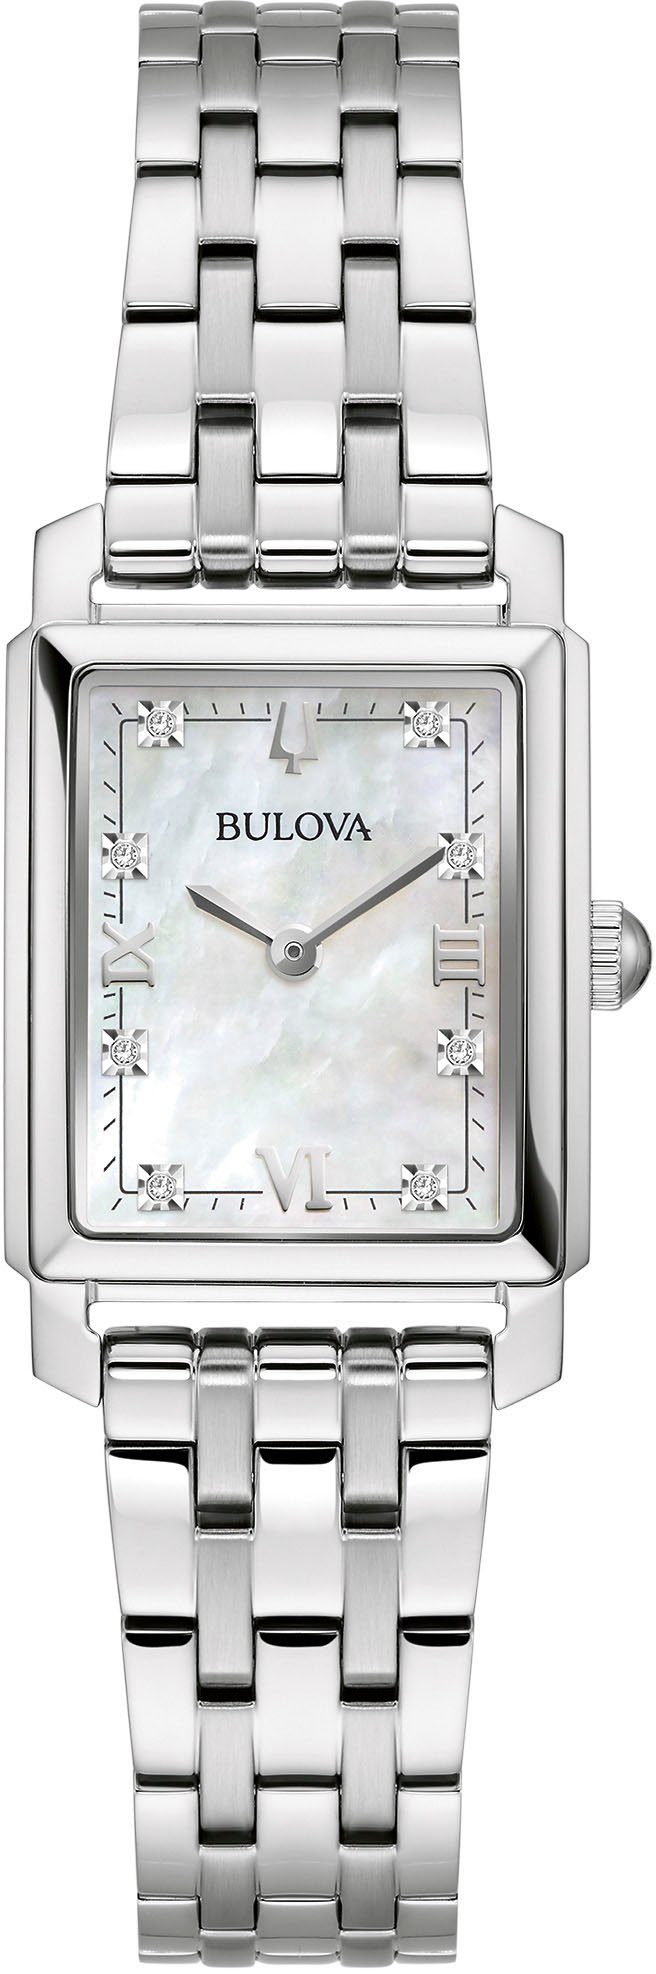 Silberne OTTO Tissot Uhren kaufen | online